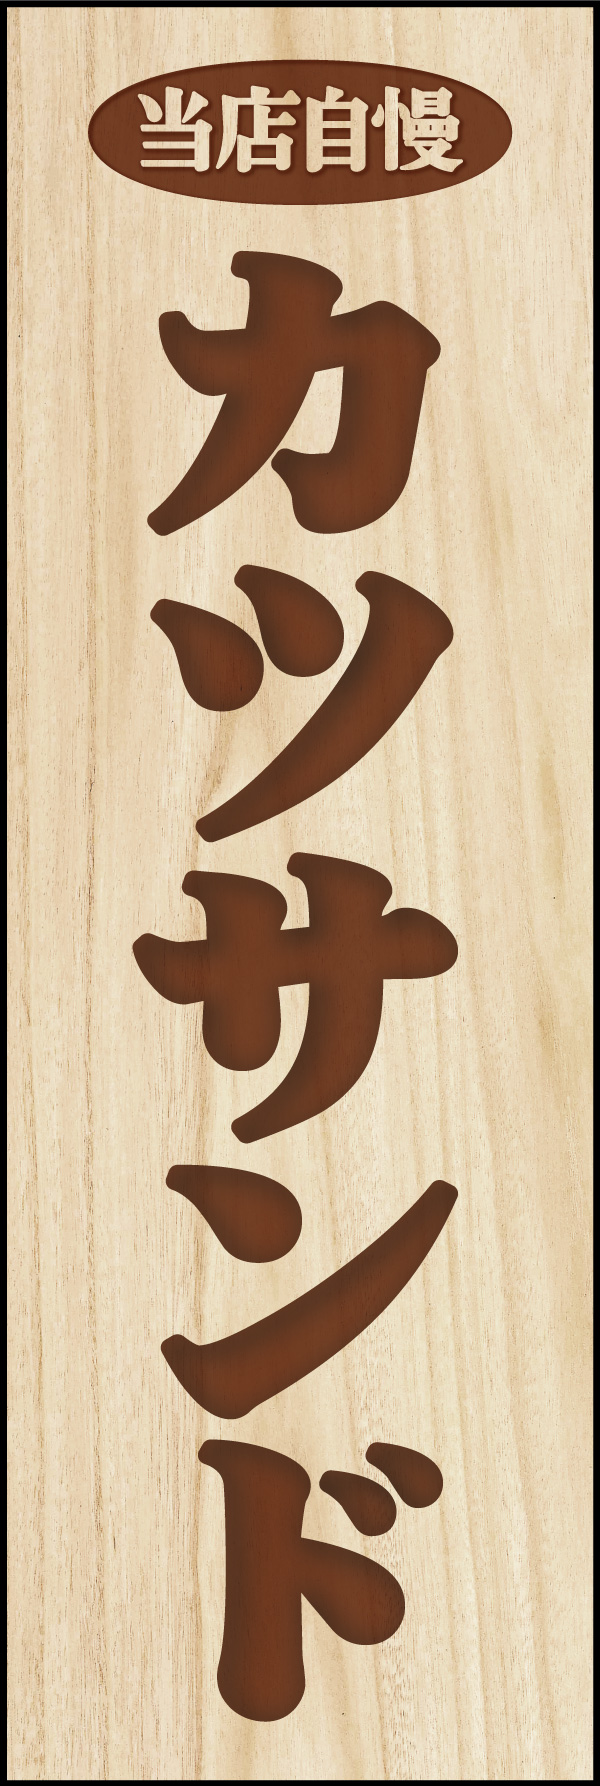 カツサンド 03 「カツサンド」ののぼりです。木彫りの札をイメージしたデザインにしました。(Y.M)